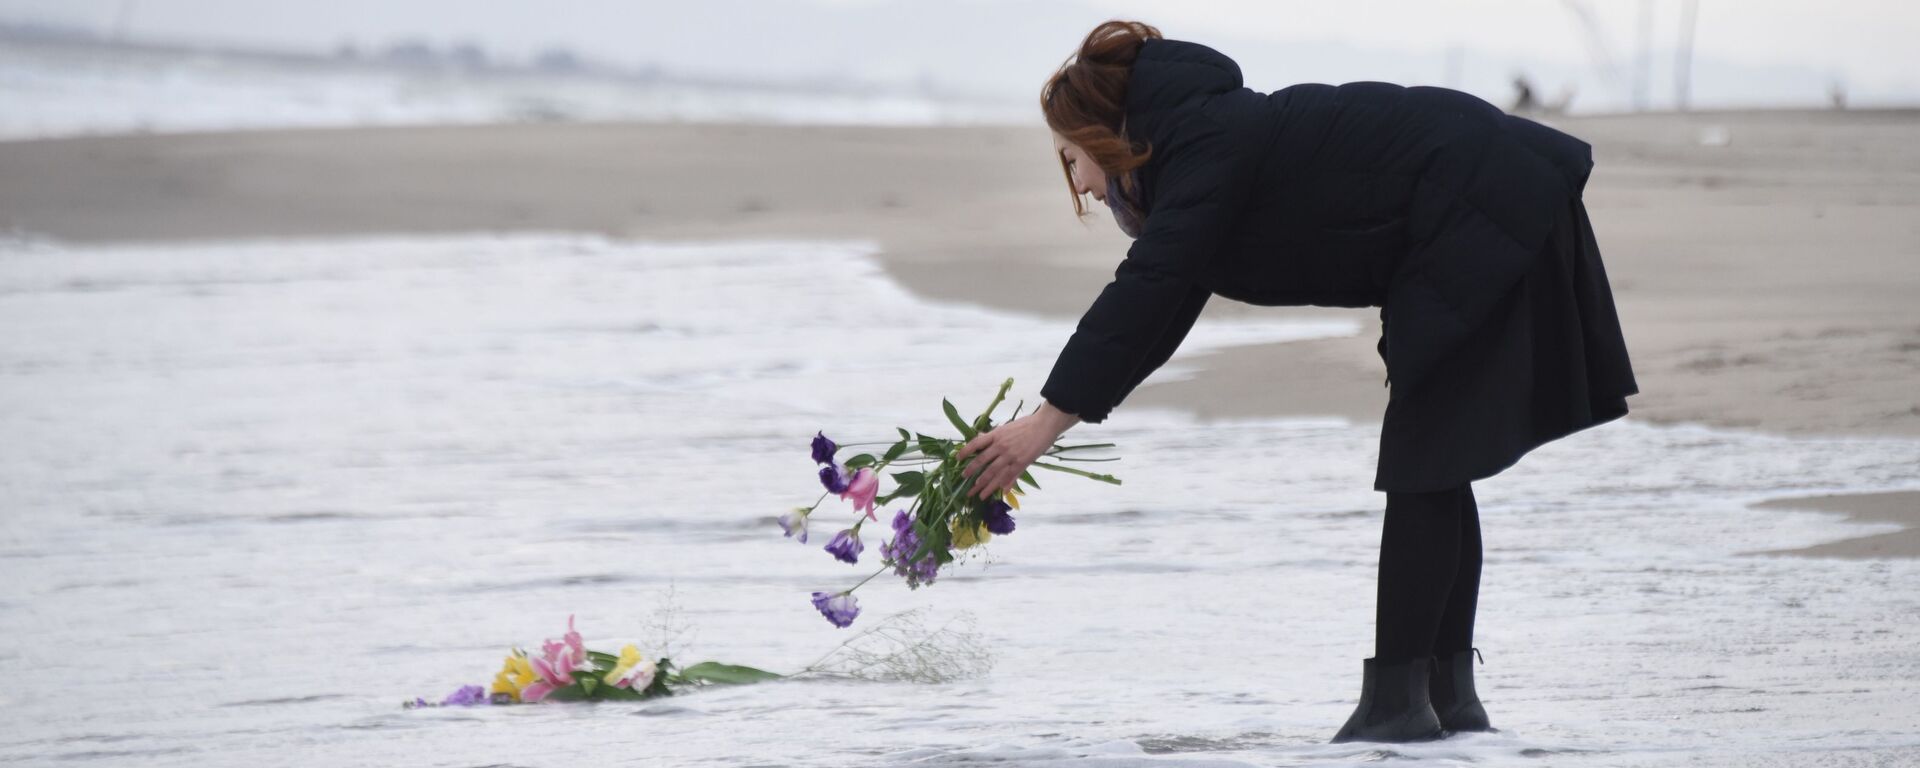 津波の犠牲者の追悼のため水に花を投げ入れる女性 - Sputnik 日本, 1920, 05.11.2021